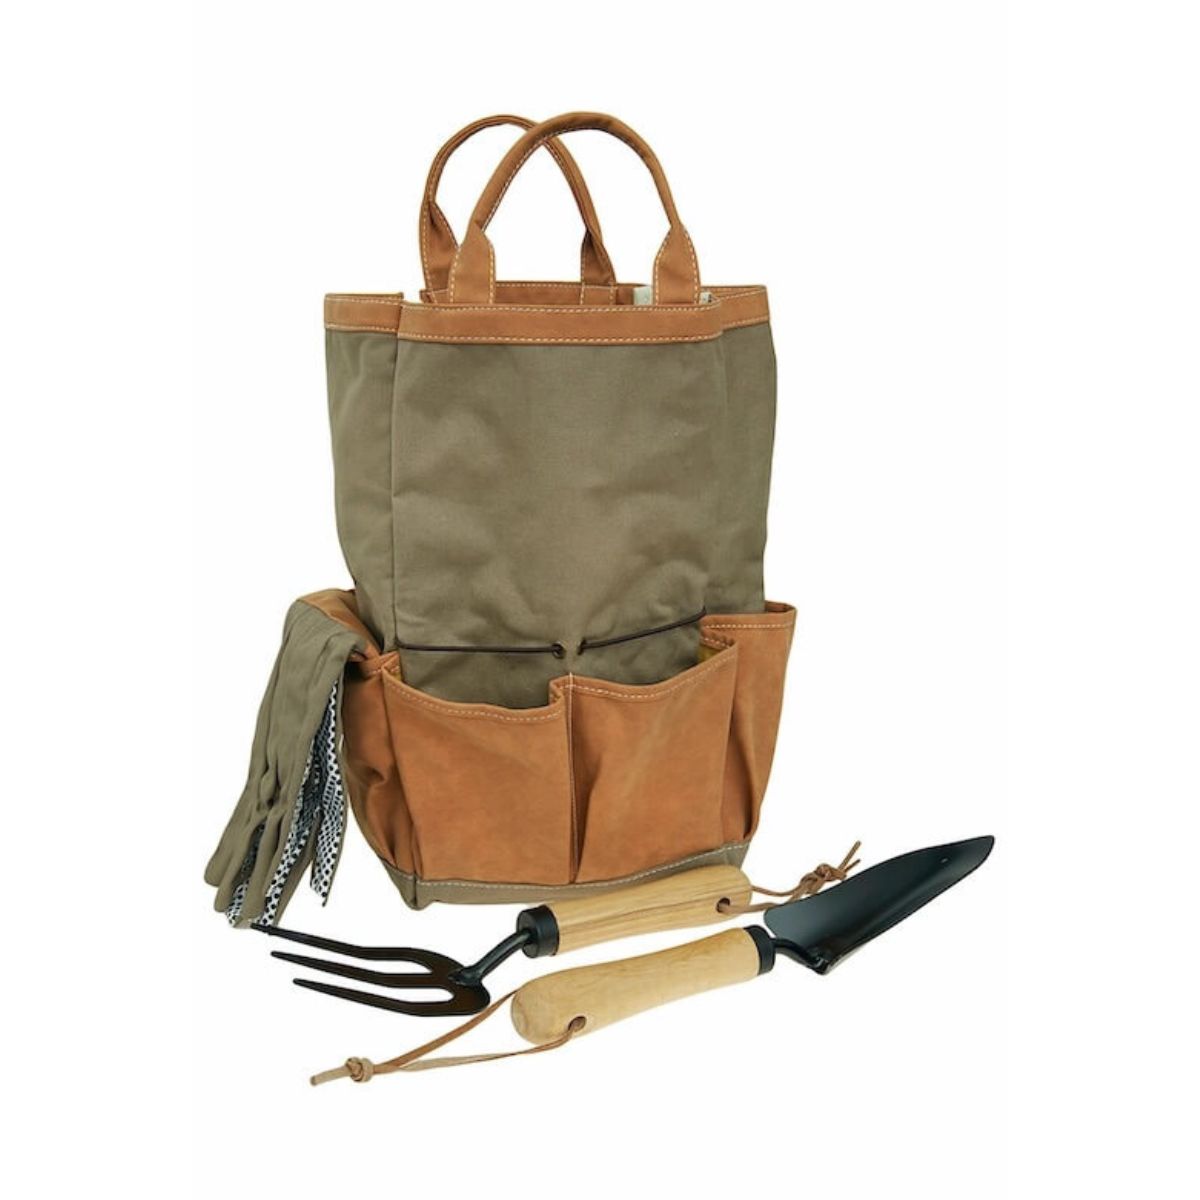 Botang 4-Piece Garden Tool Set with Bag